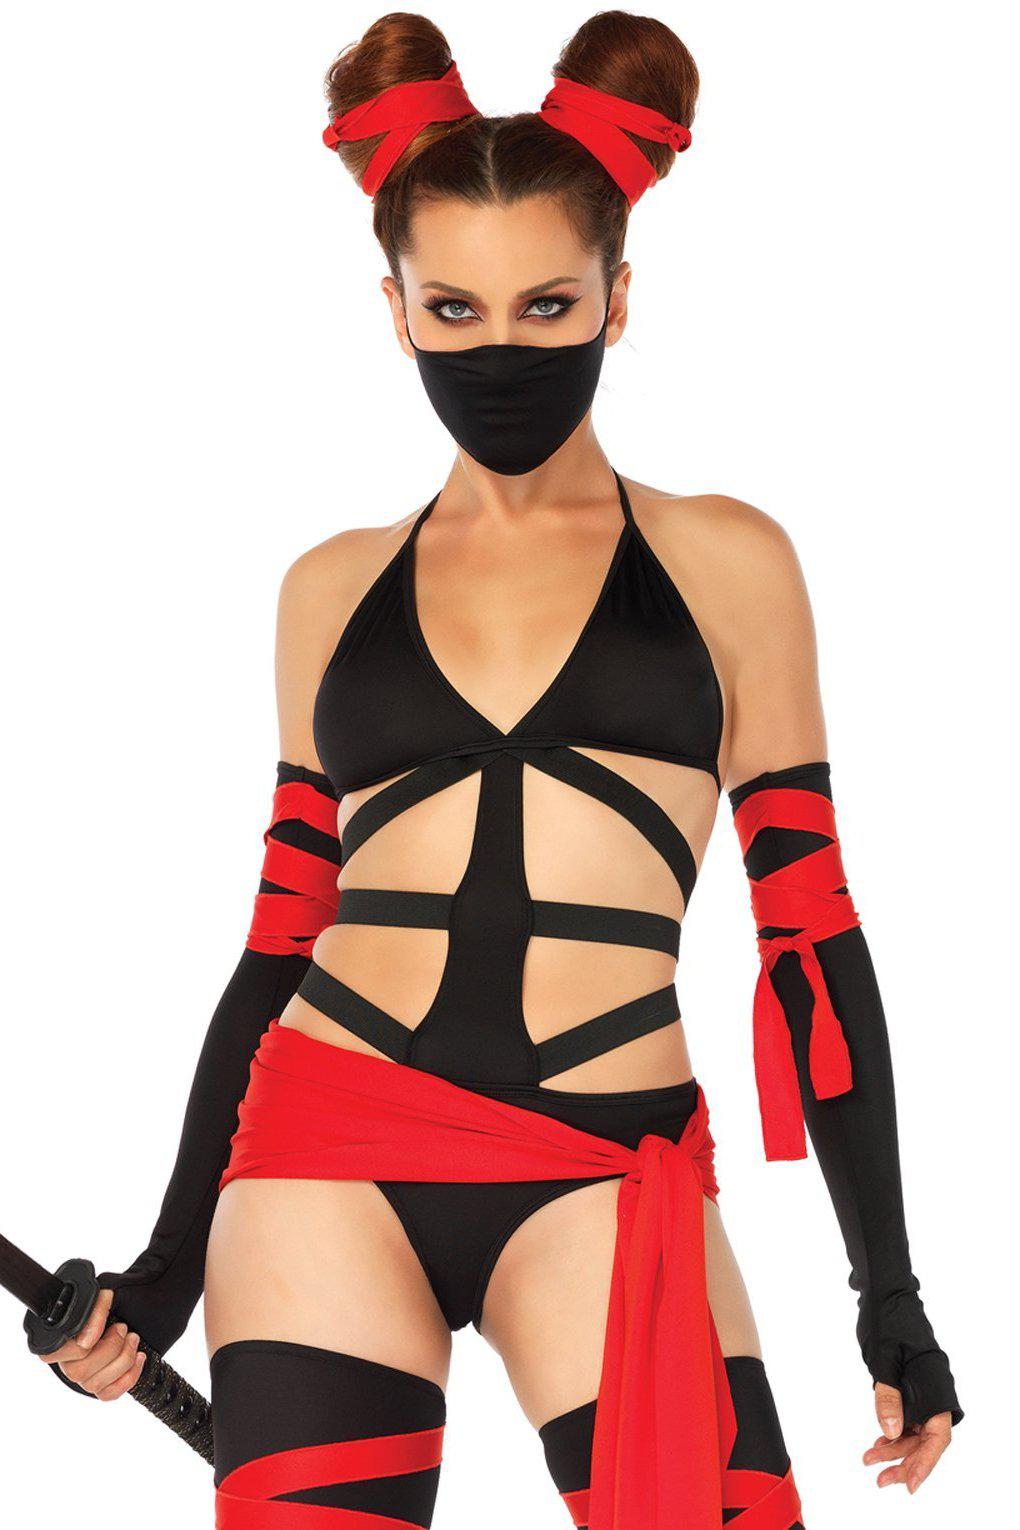 Killer Ninja Costume-Villian Costumes-Leg Avenue-Black-S-SEXYSHOES.COM